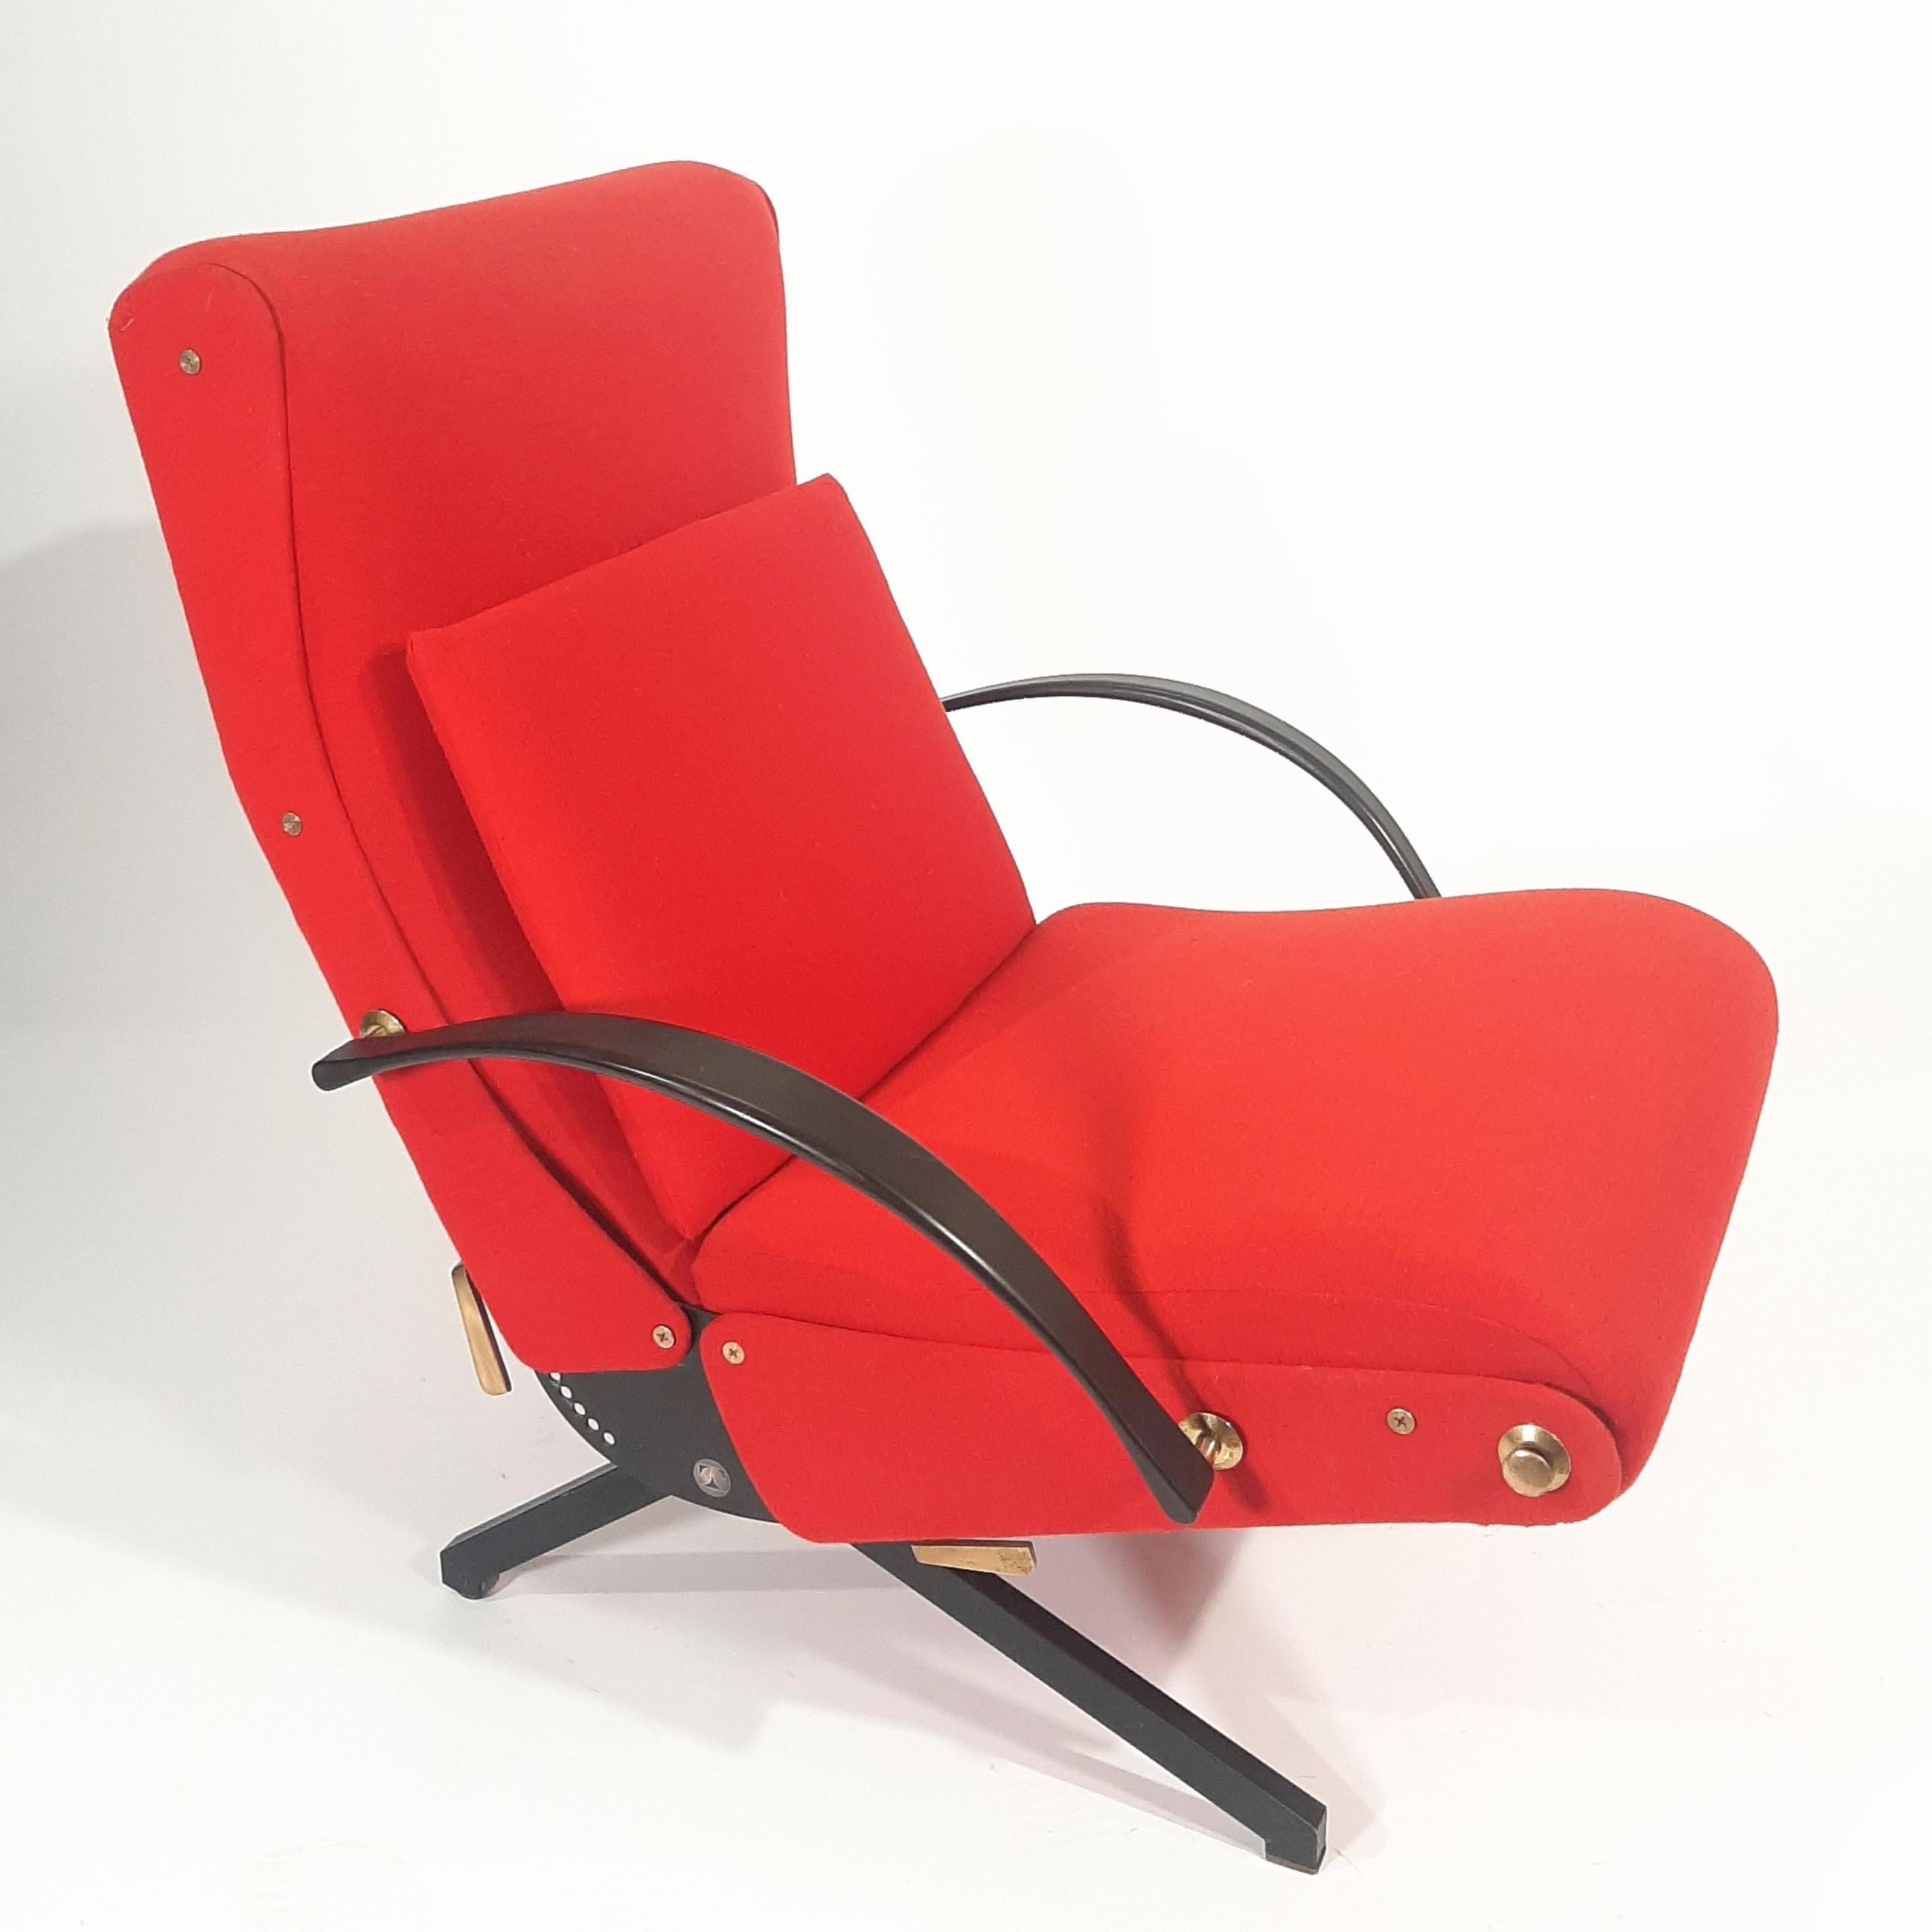 La chaise longue P40, polyvalente et confortable, a été conçue par Osvaldo Borsani en 1955 pour Tecno. La chaise peut être réglée dans plus de 400 positions ; le dossier peut être incliné dans différents angles, l'appui-tête se déplace vers le haut